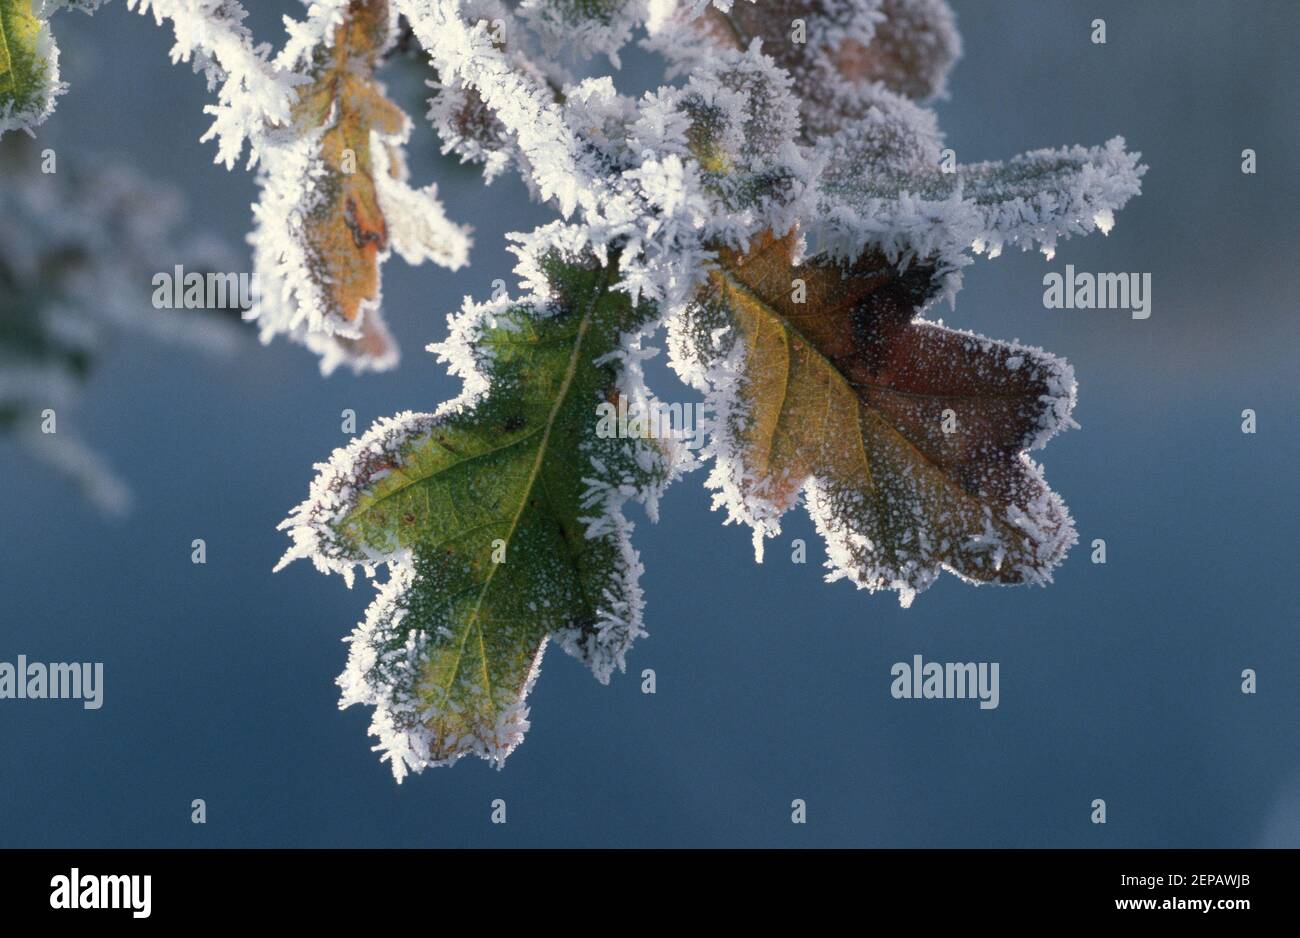 Oak tree / Oak leaf Stock Photo